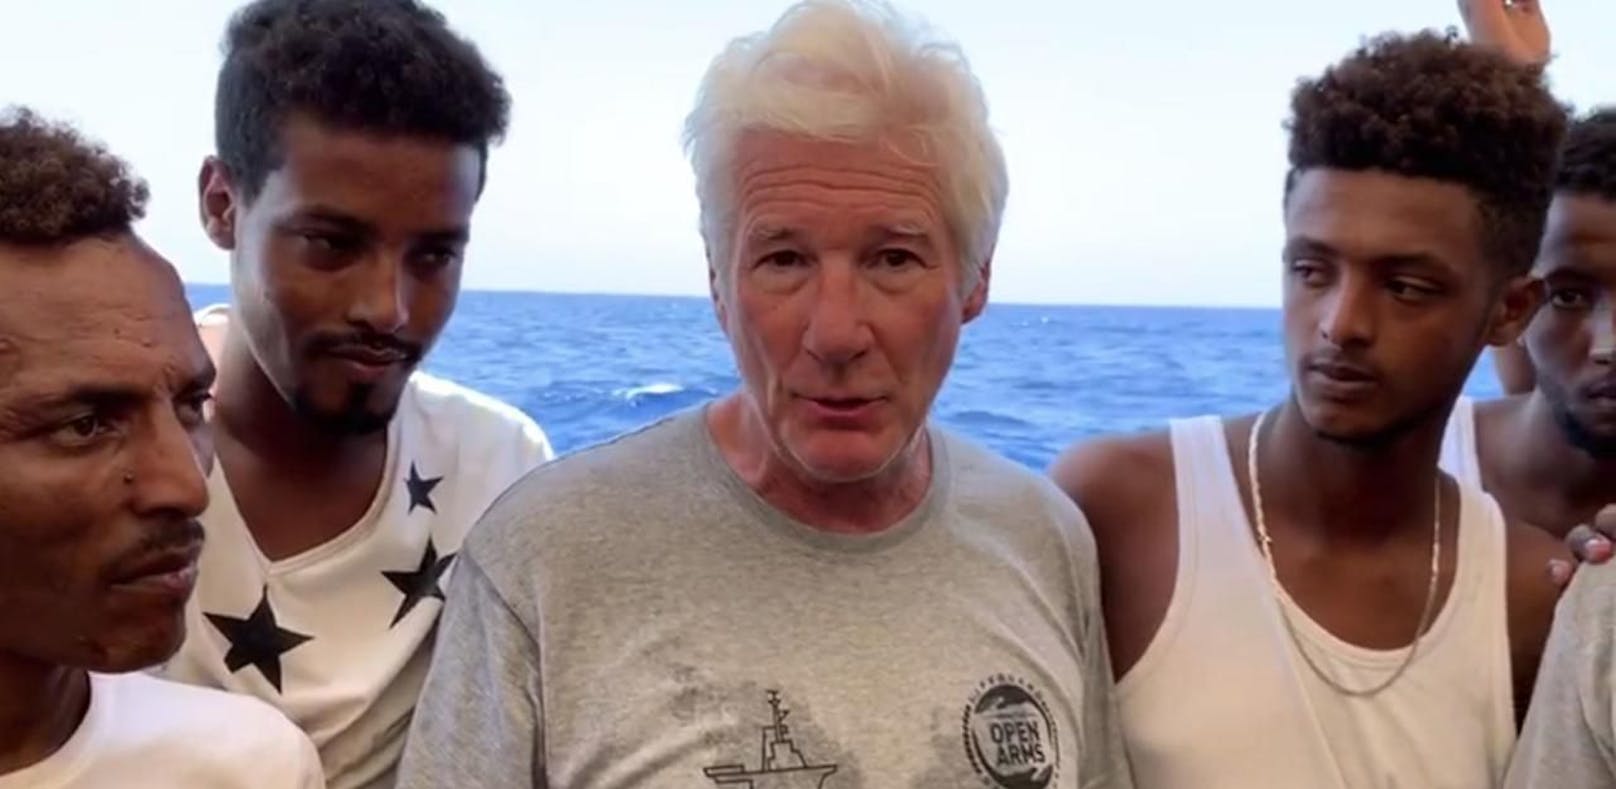 Richard Gere hilft auf Flüchtlingsboot